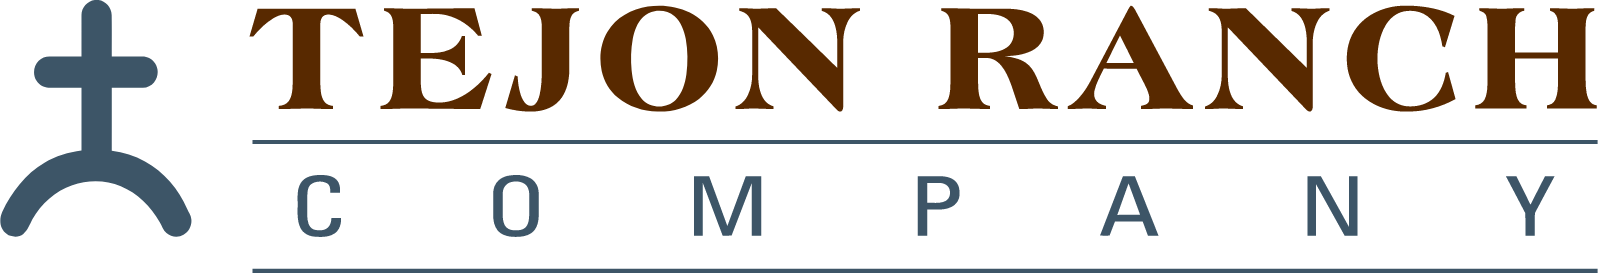 Tejon Ranch
 logo large (transparent PNG)